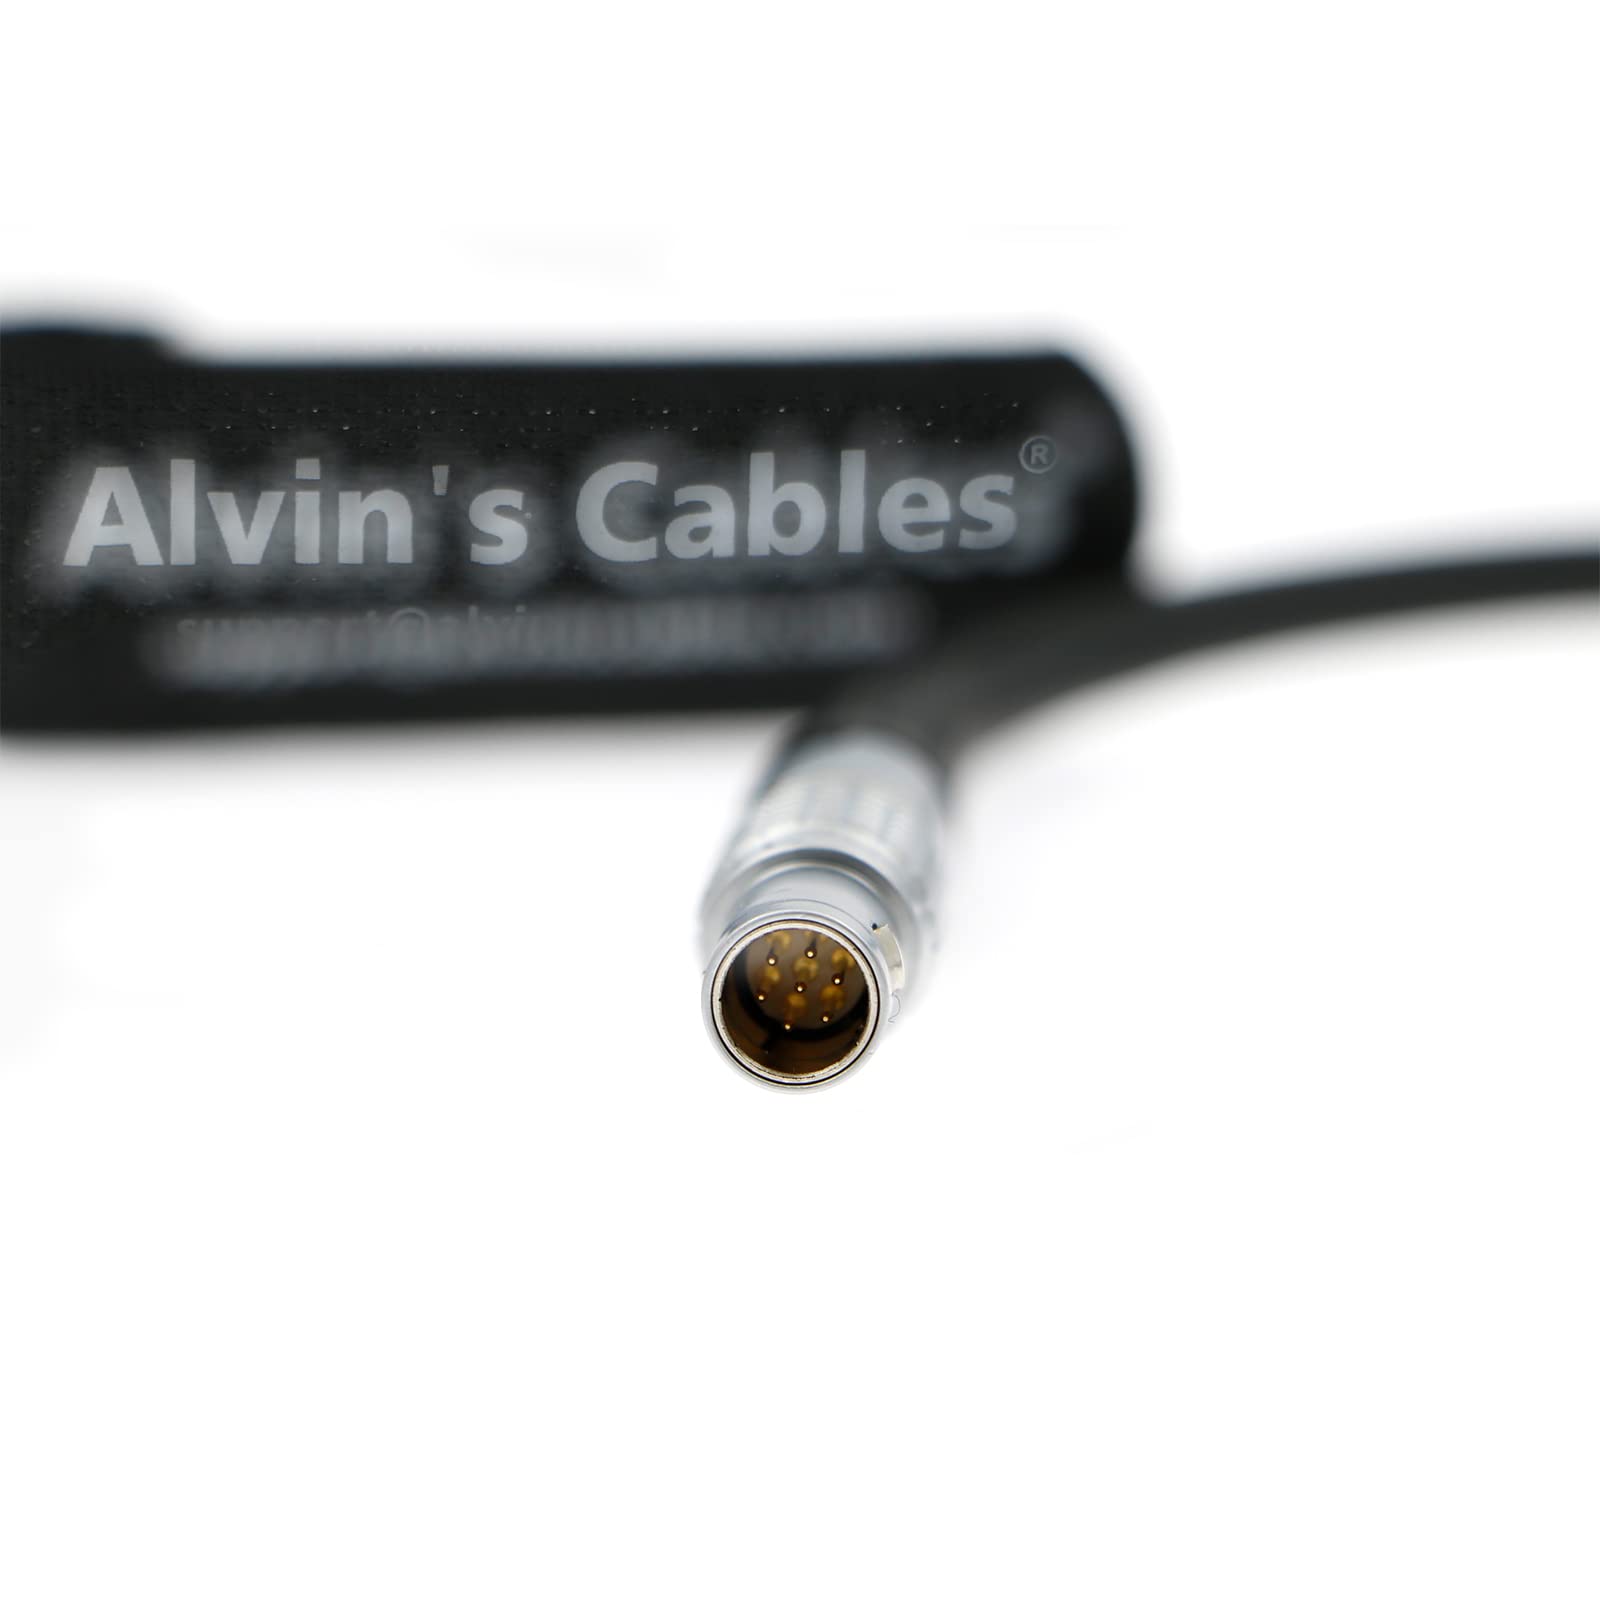 Alvin’s Cables Nucleus-M Motorstromkabel für DJI Ronin-S 4-polige Buchse auf 7-poligen Stecker Stromkabel für Tilta 30 cm | 12 Zoll